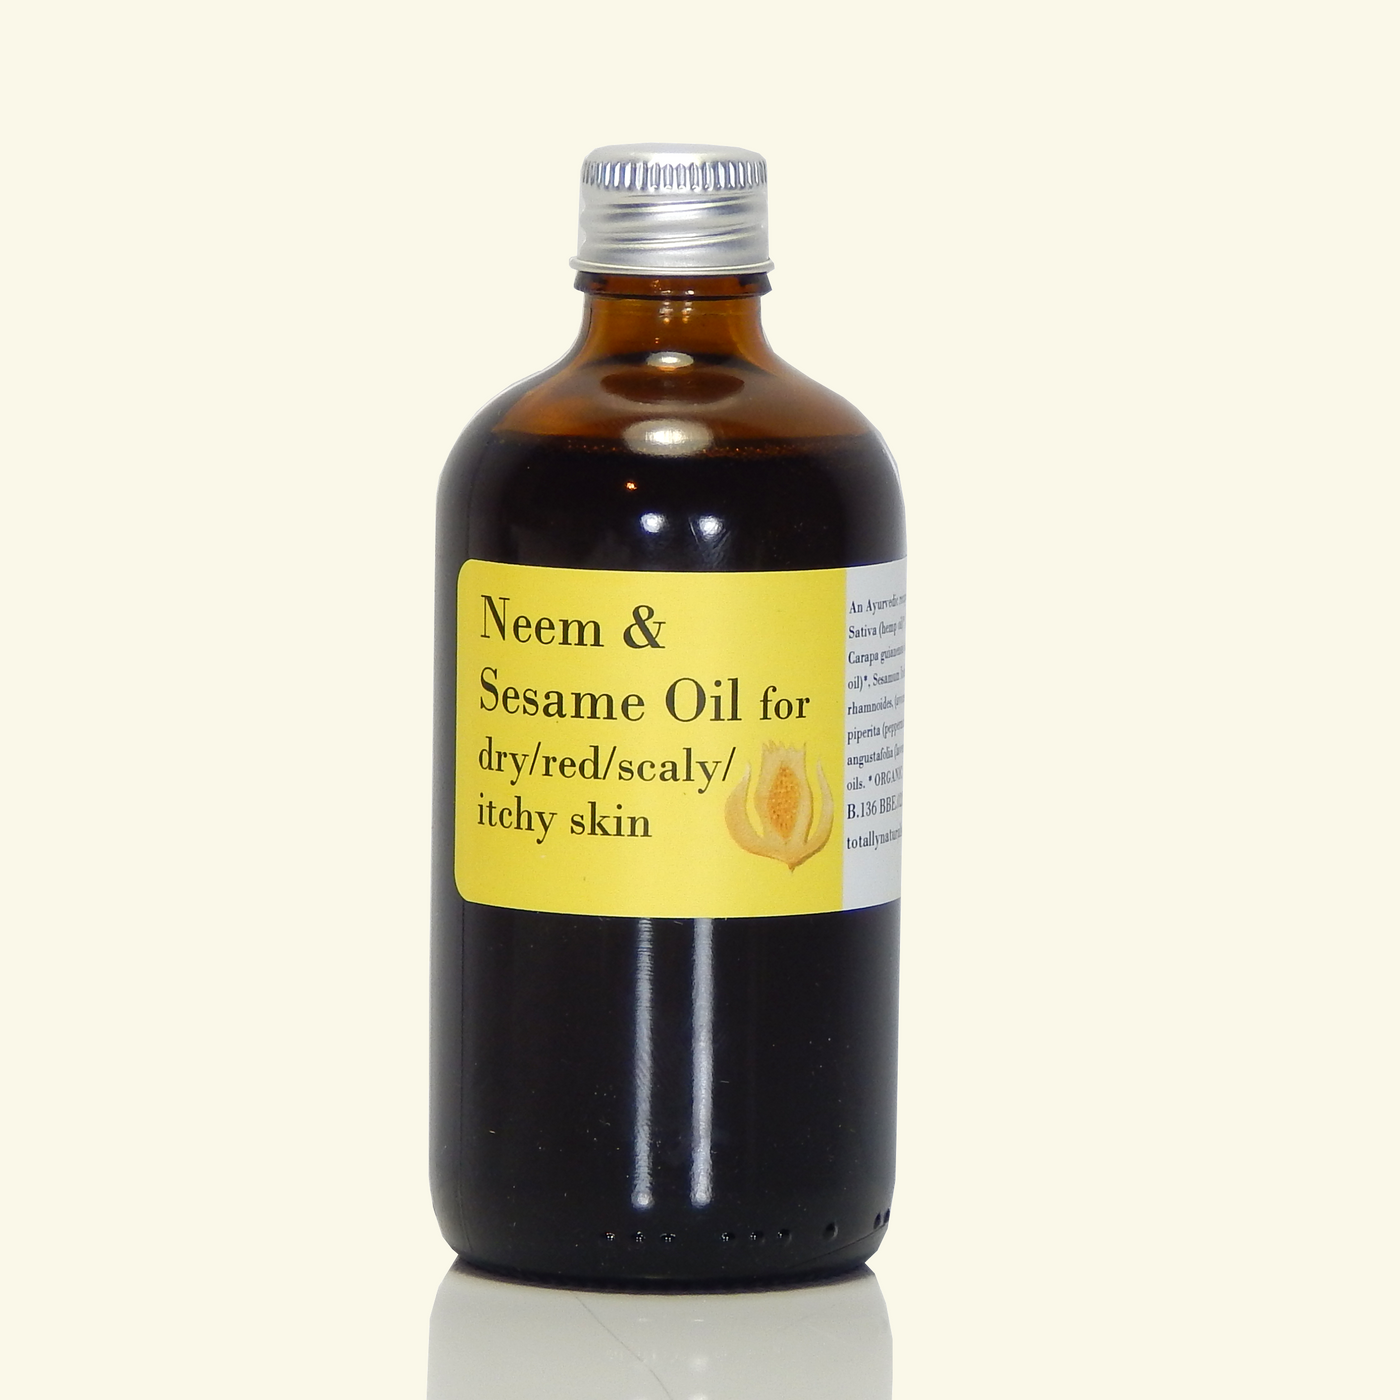 Neem & Sesame Oil with tamanu